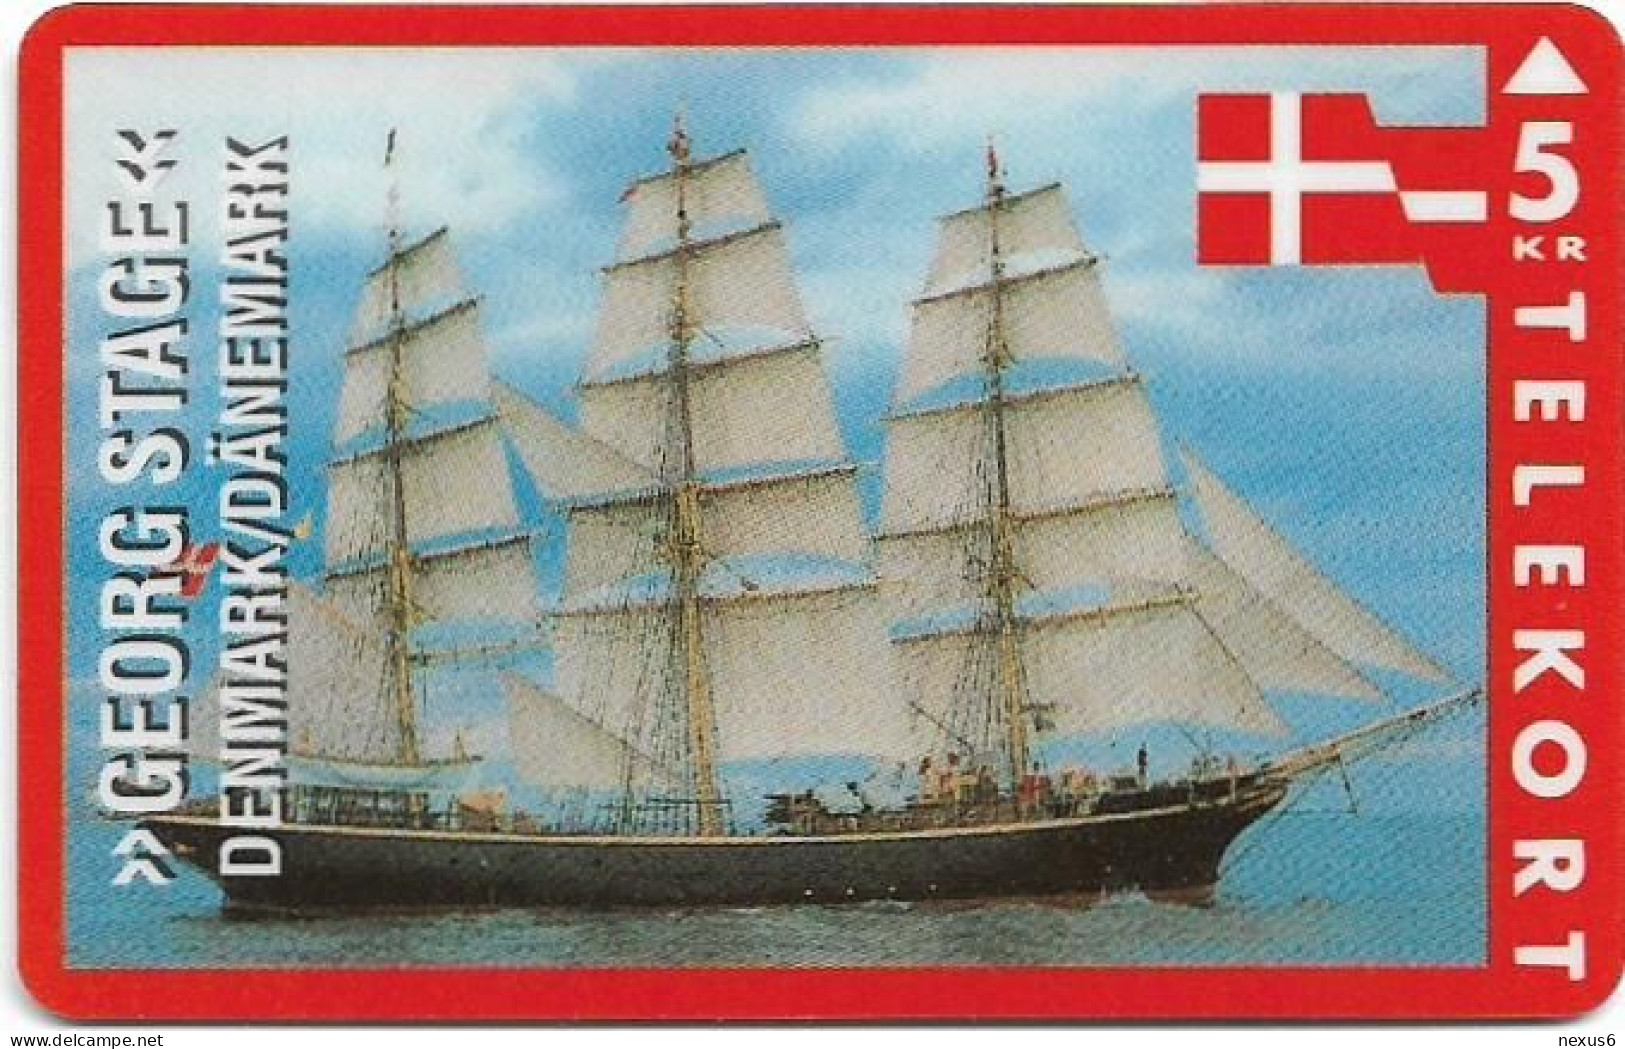 Denmark - KTAS - Ships (Red) - Denmark - Georg Stage - TDKP060 - 01.1994, 5kr, 2.500ex, Used - Denmark